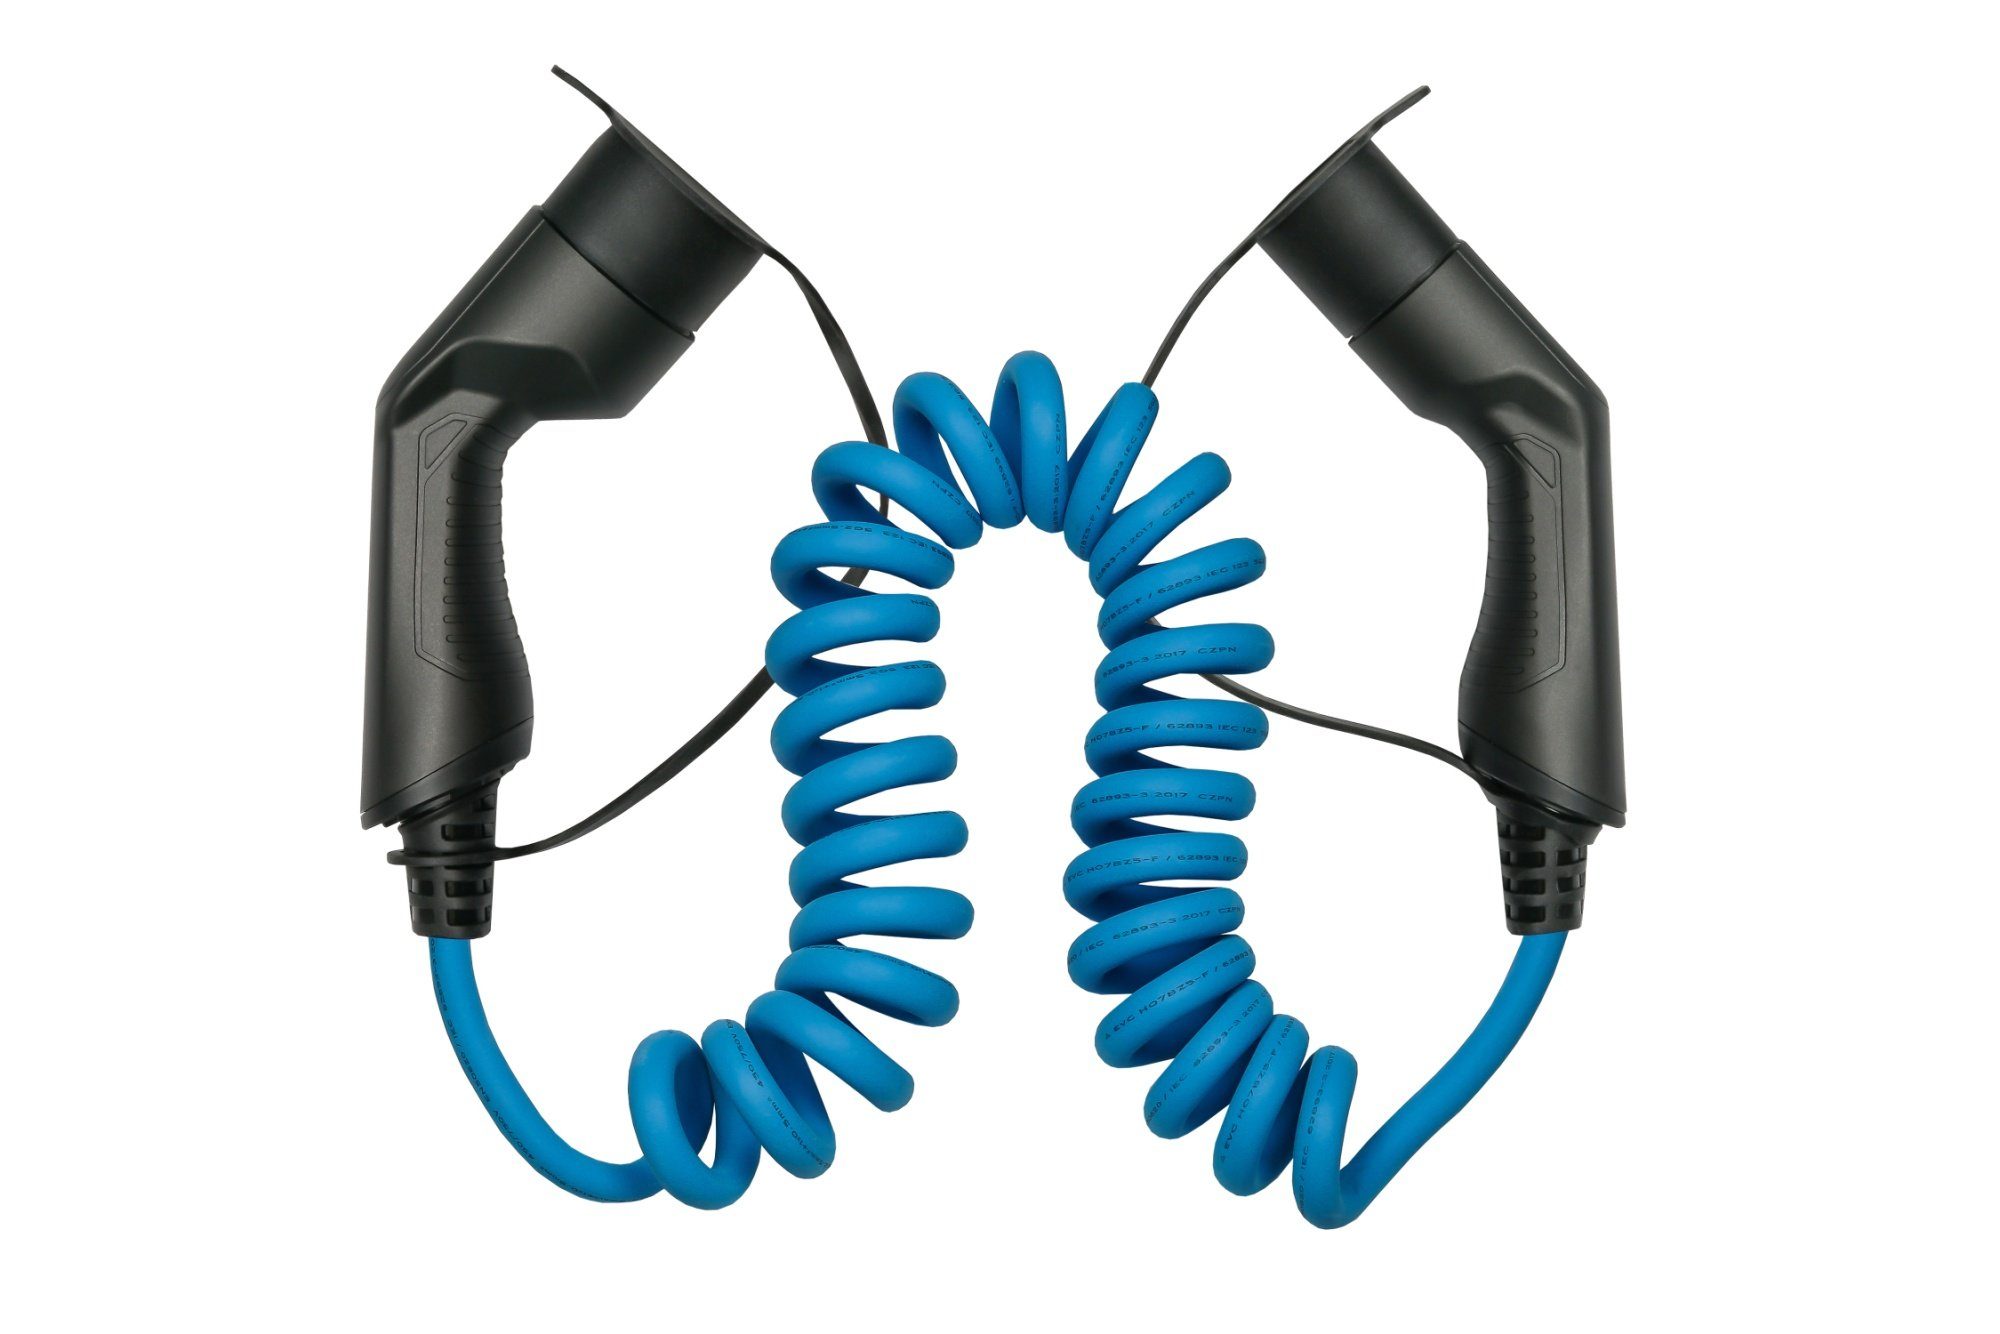 Kabelmeister E-Auto-Ladekabel Mode 3, Elektroauto-Ladegerät Typ 2,3-phasig,16A,11kW,Spiralkabel,blau,5m